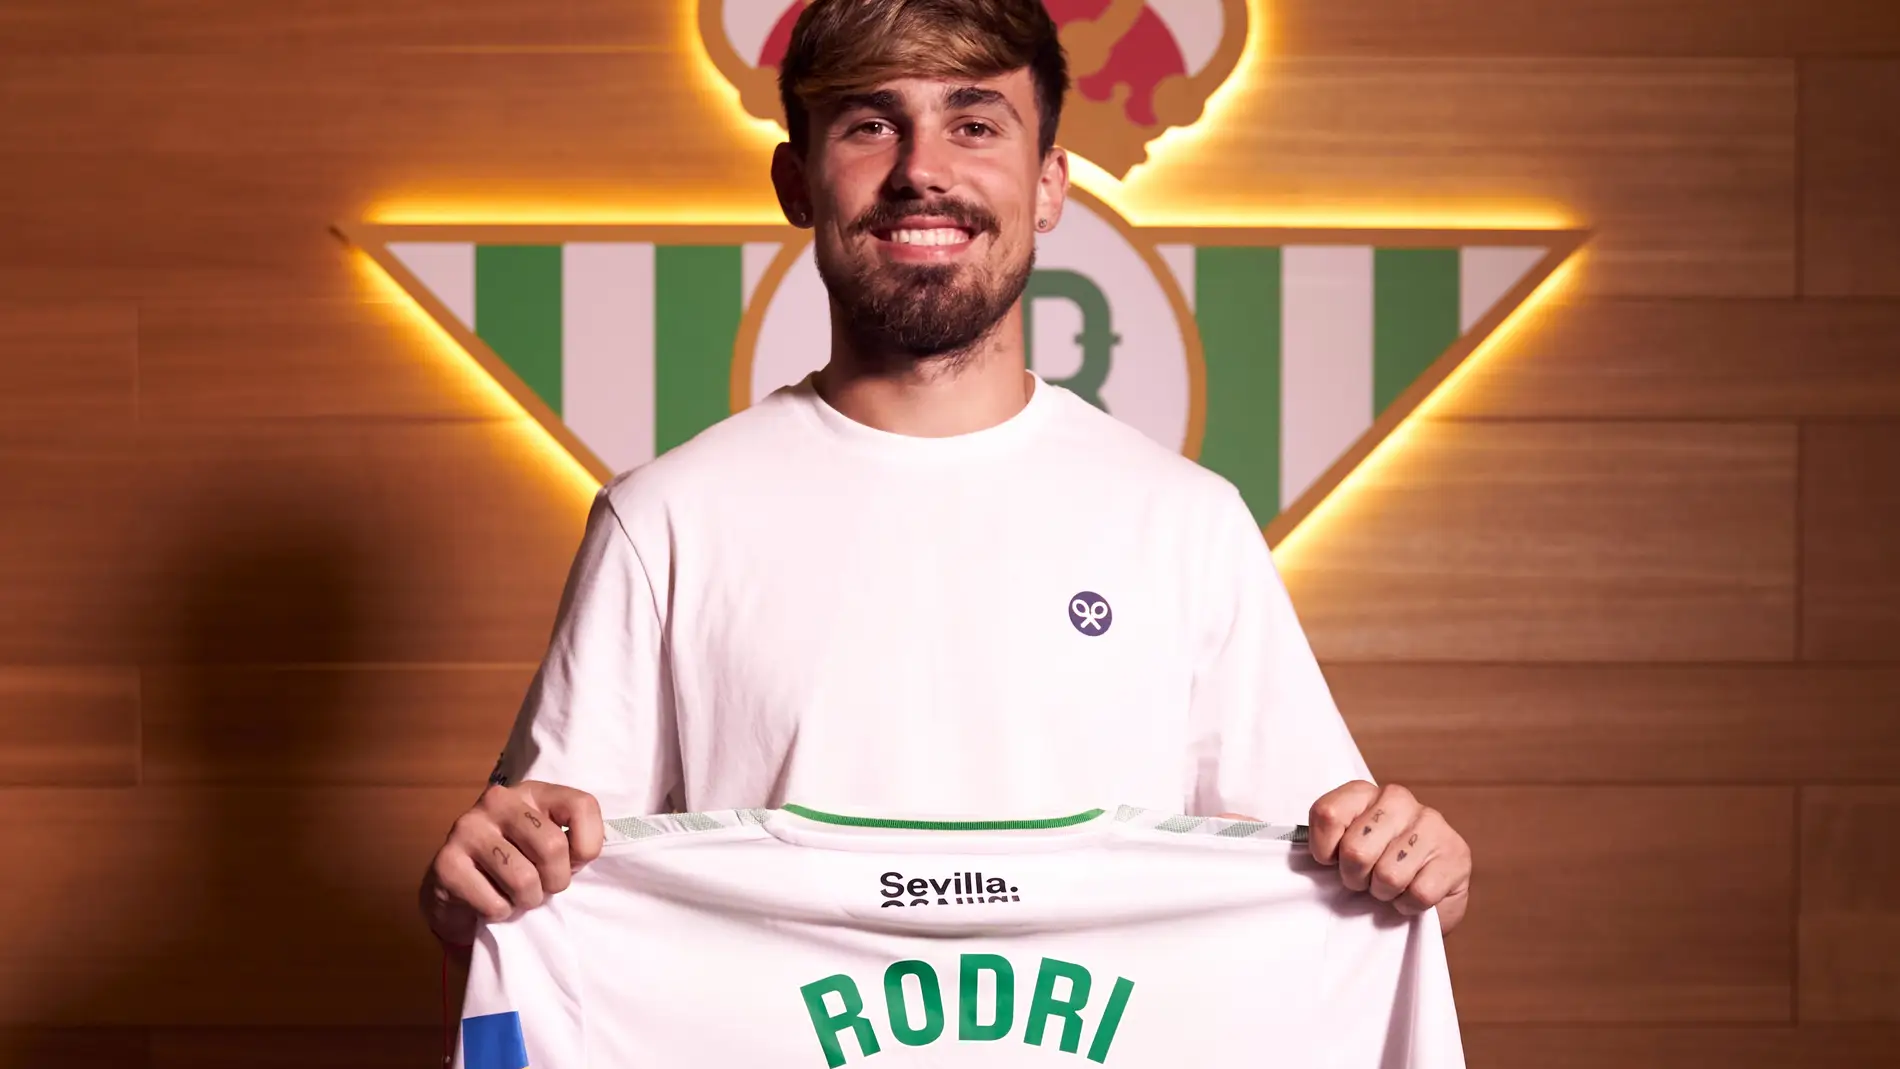 Rodri posa con una camiseta del Betis con el 2028, año en el que finaliza su nuevo contrato.